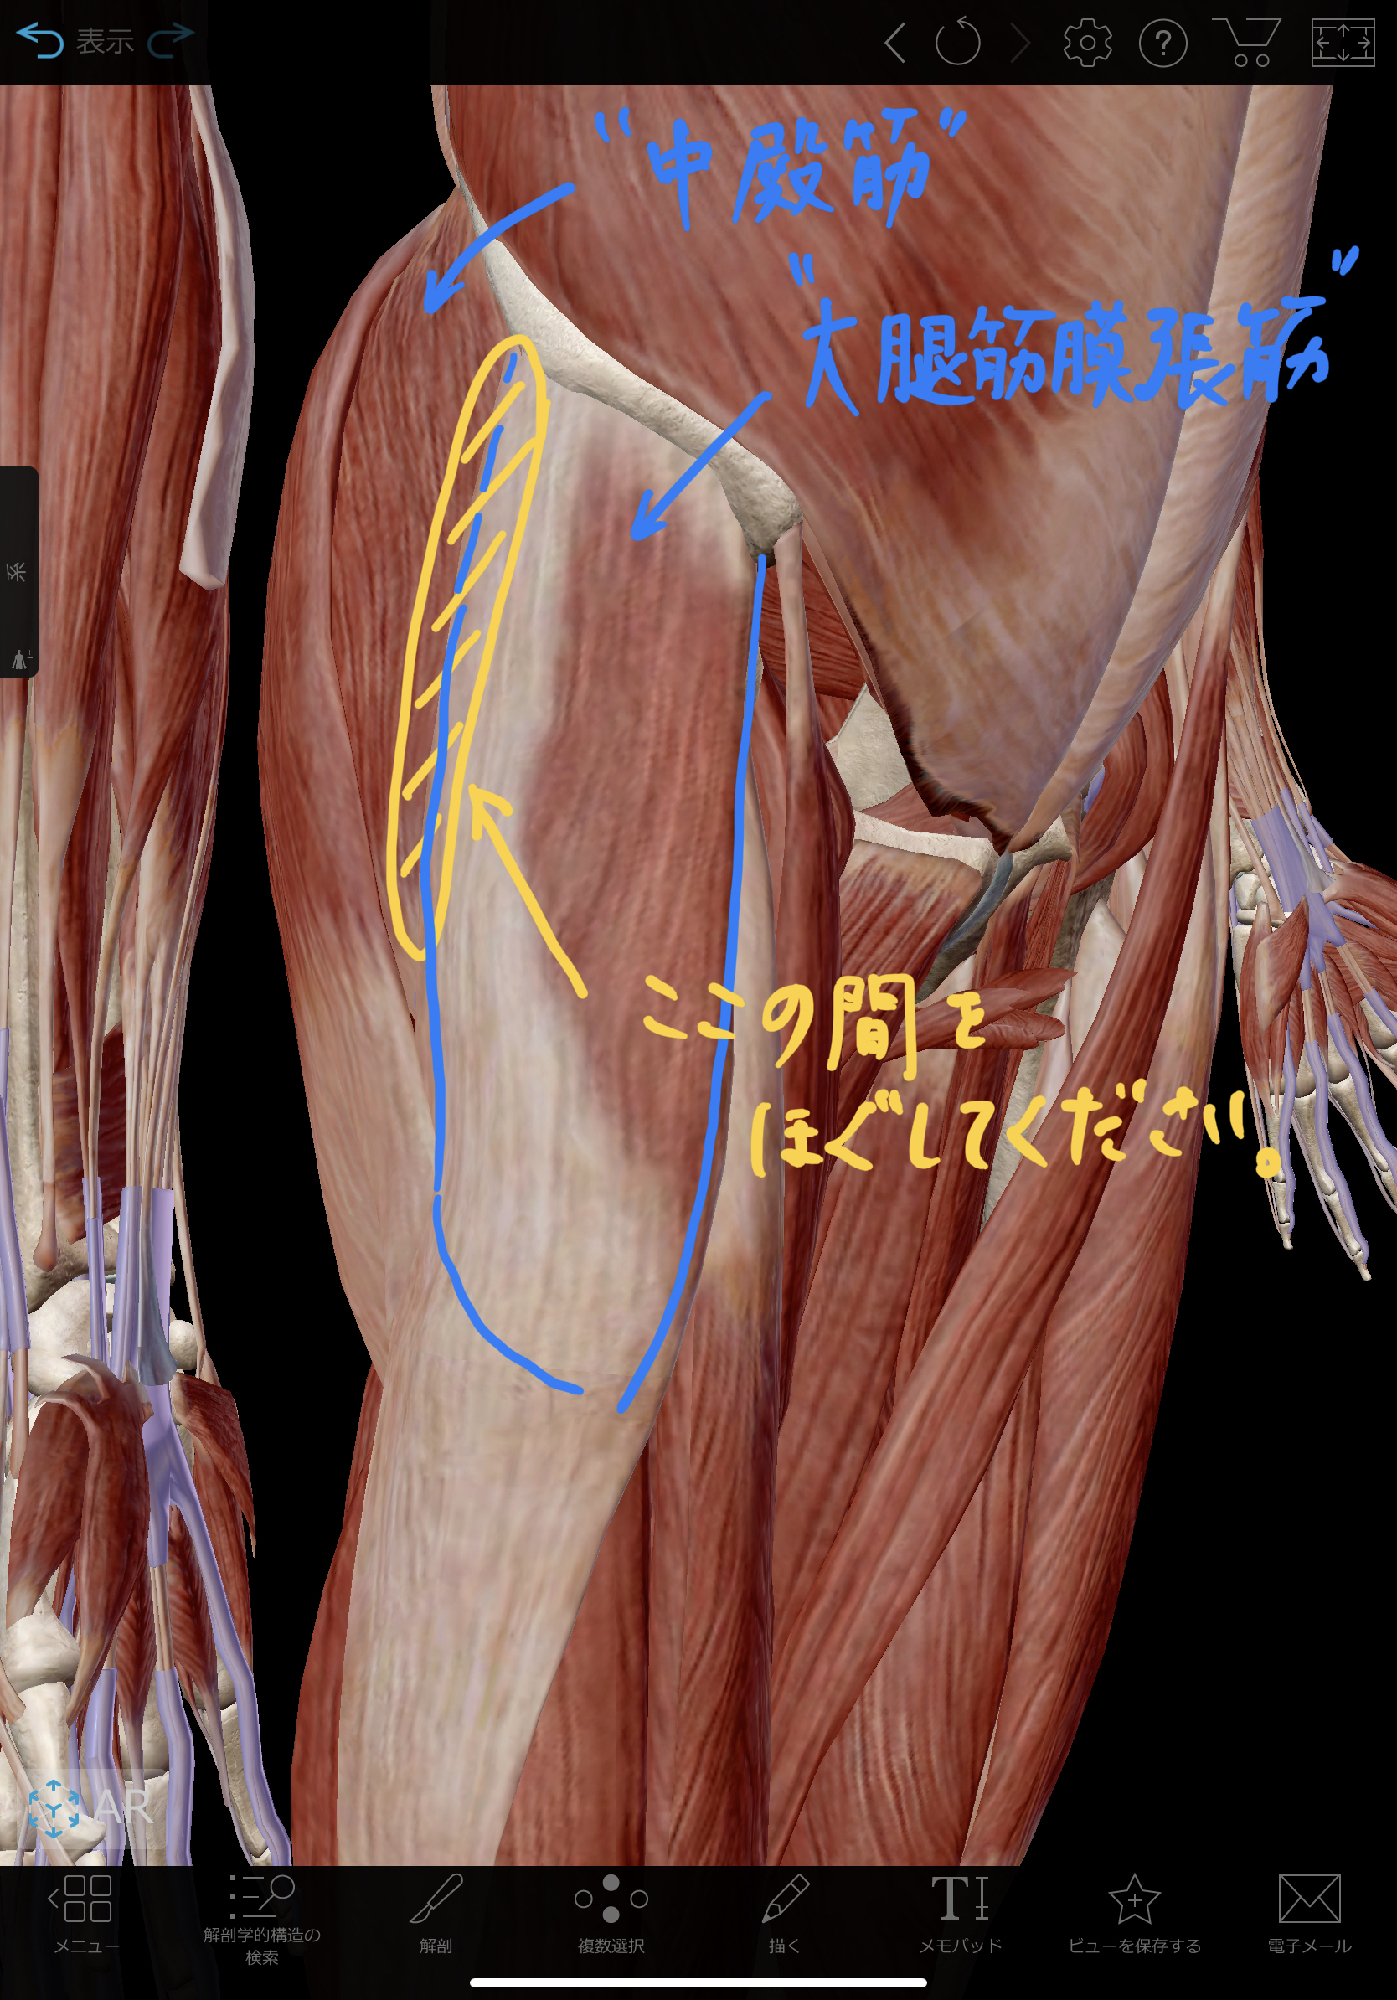 腰痛 坐骨神経痛を改善する 大腿筋膜張筋ー中殿筋 筋間リリース 理学療法士 安部元隆 マイベストプロ大分